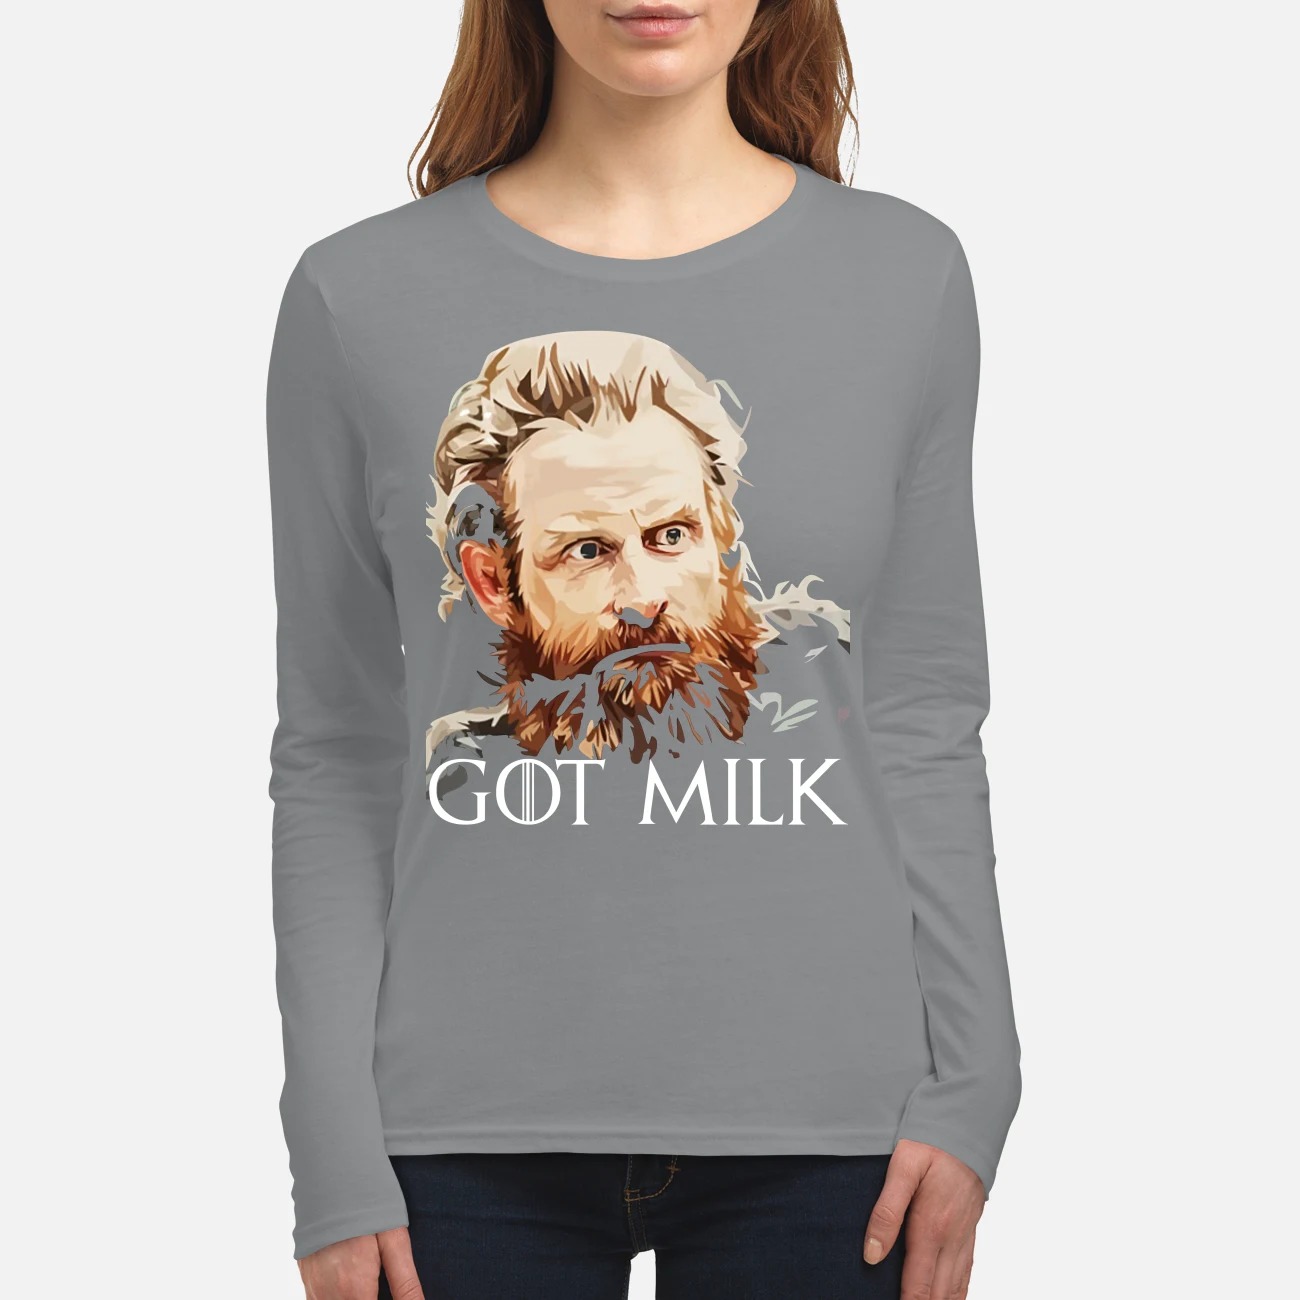 Tormund Giantsbane got milk women's long sleeved shirt